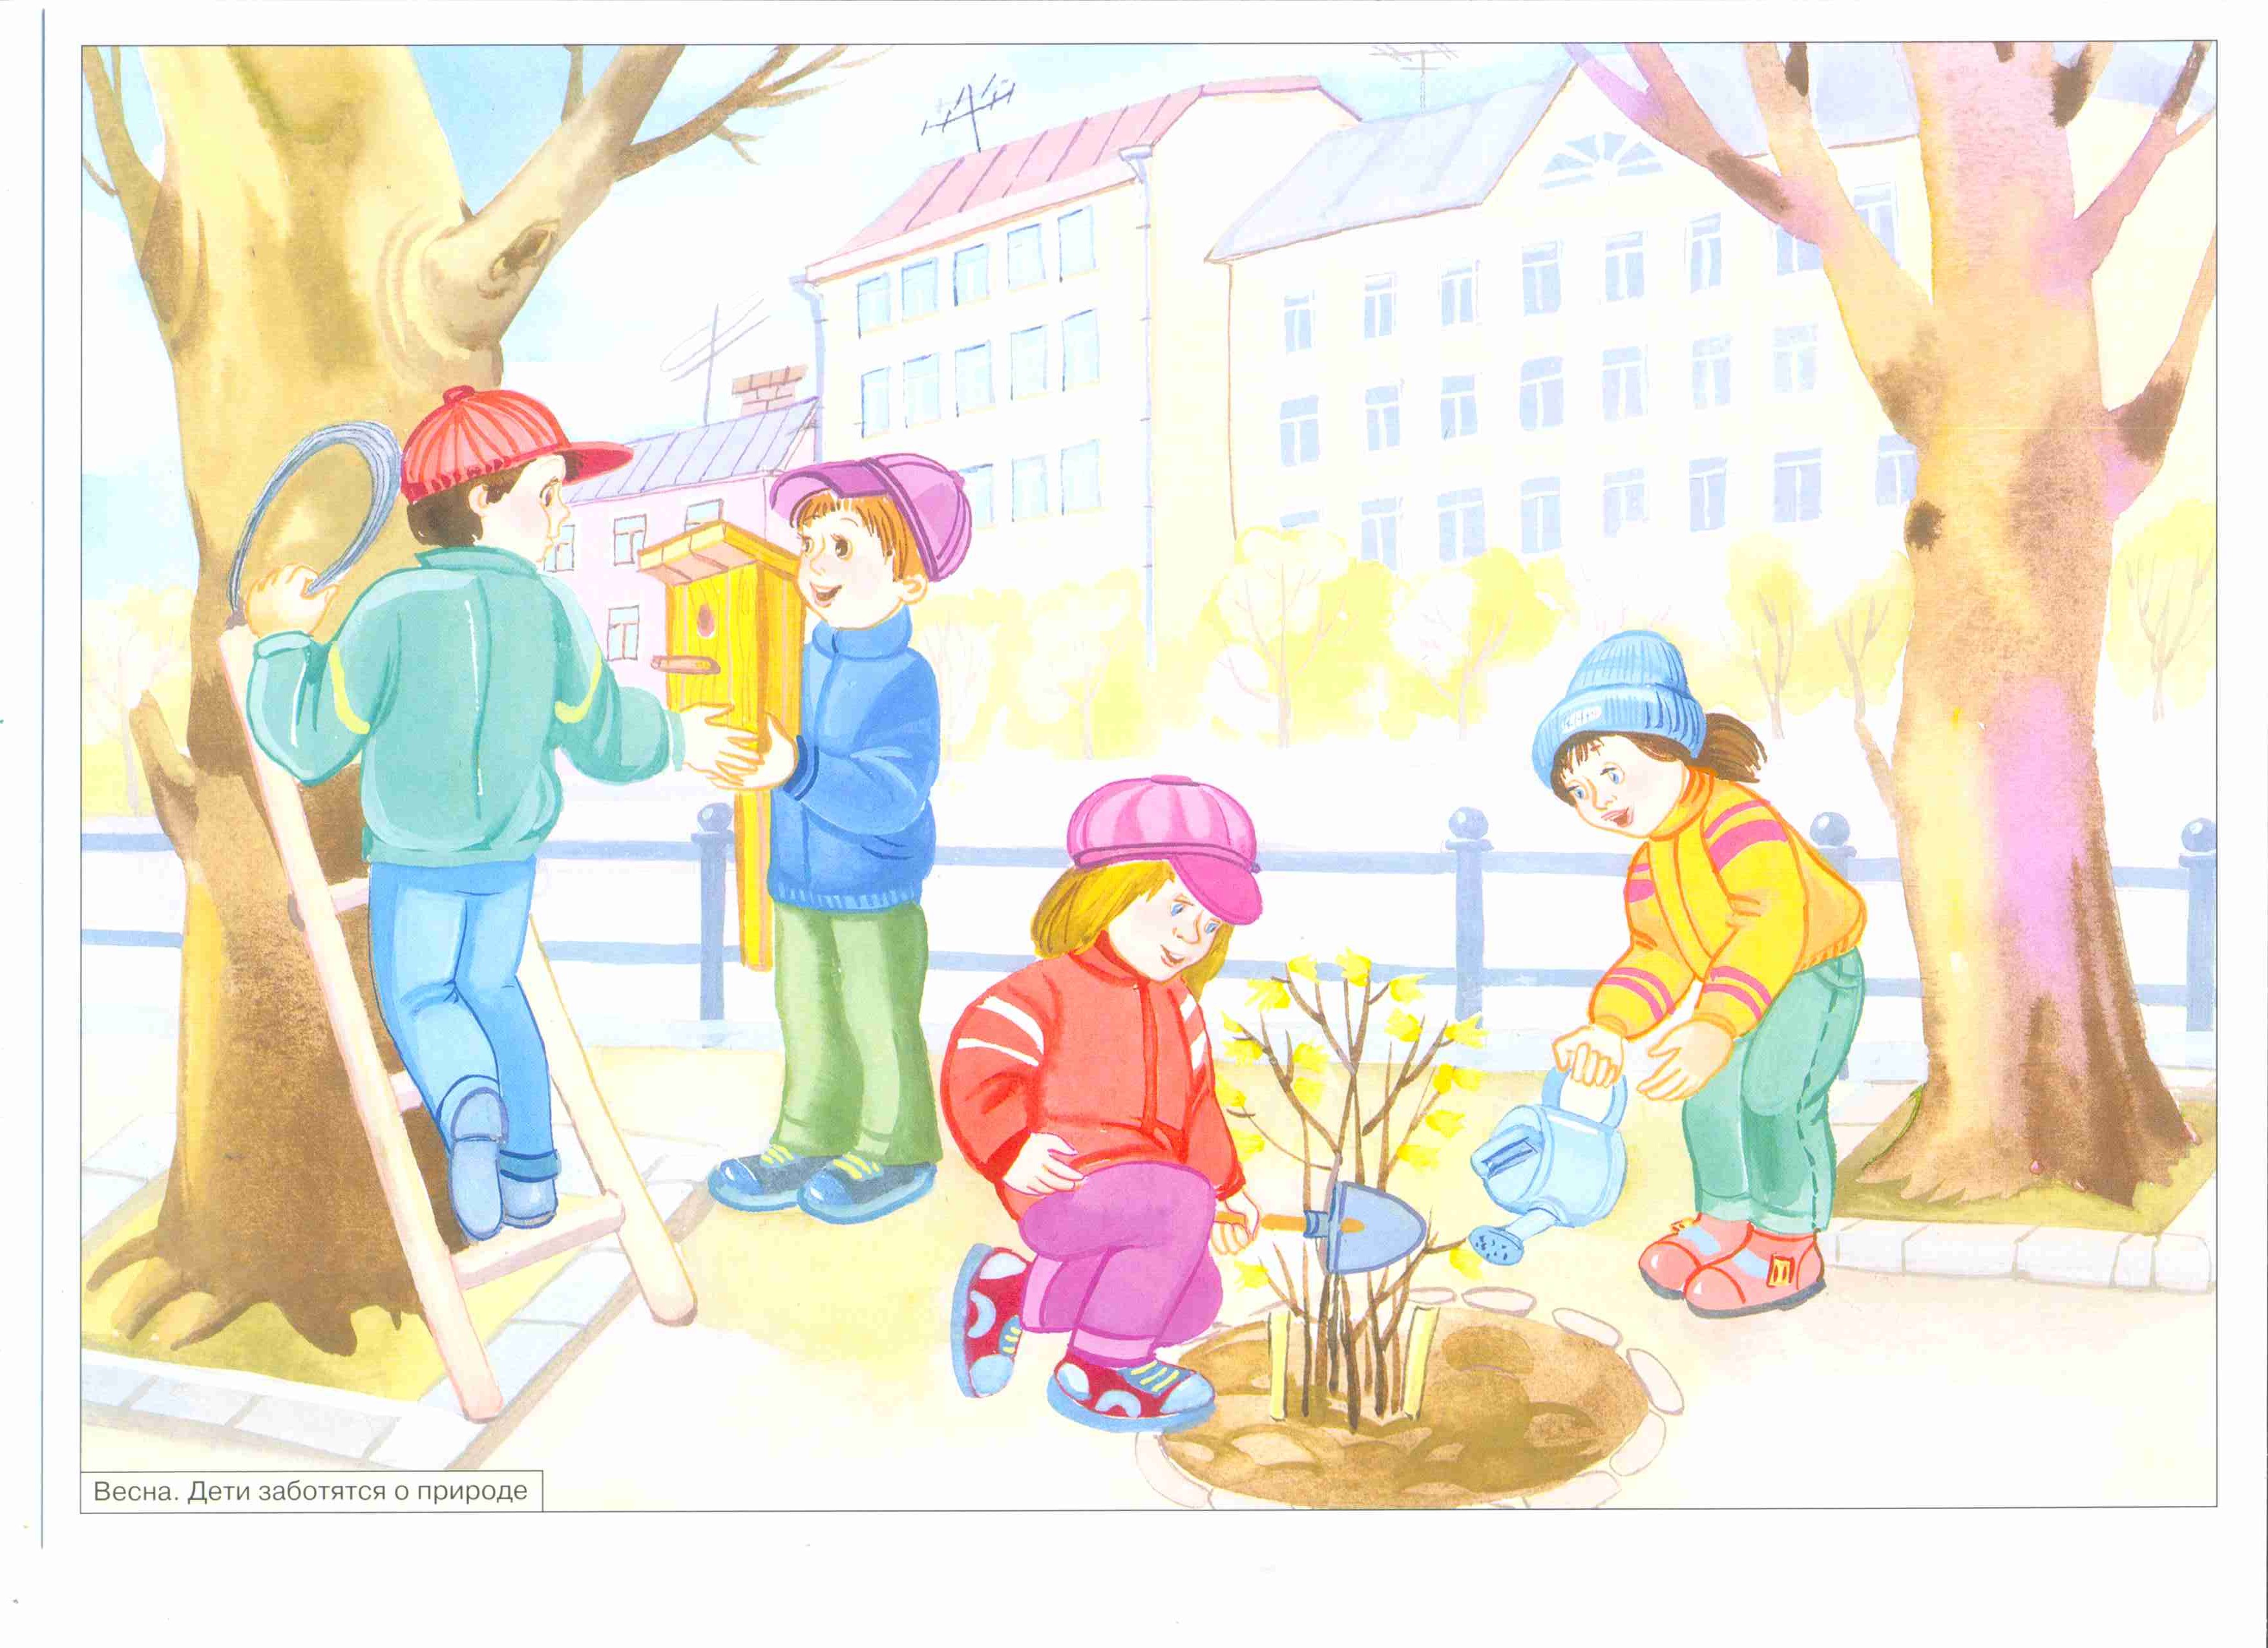 Труд людей весной младшая. Иллюстрации о труде для детей дошкольного возраста.